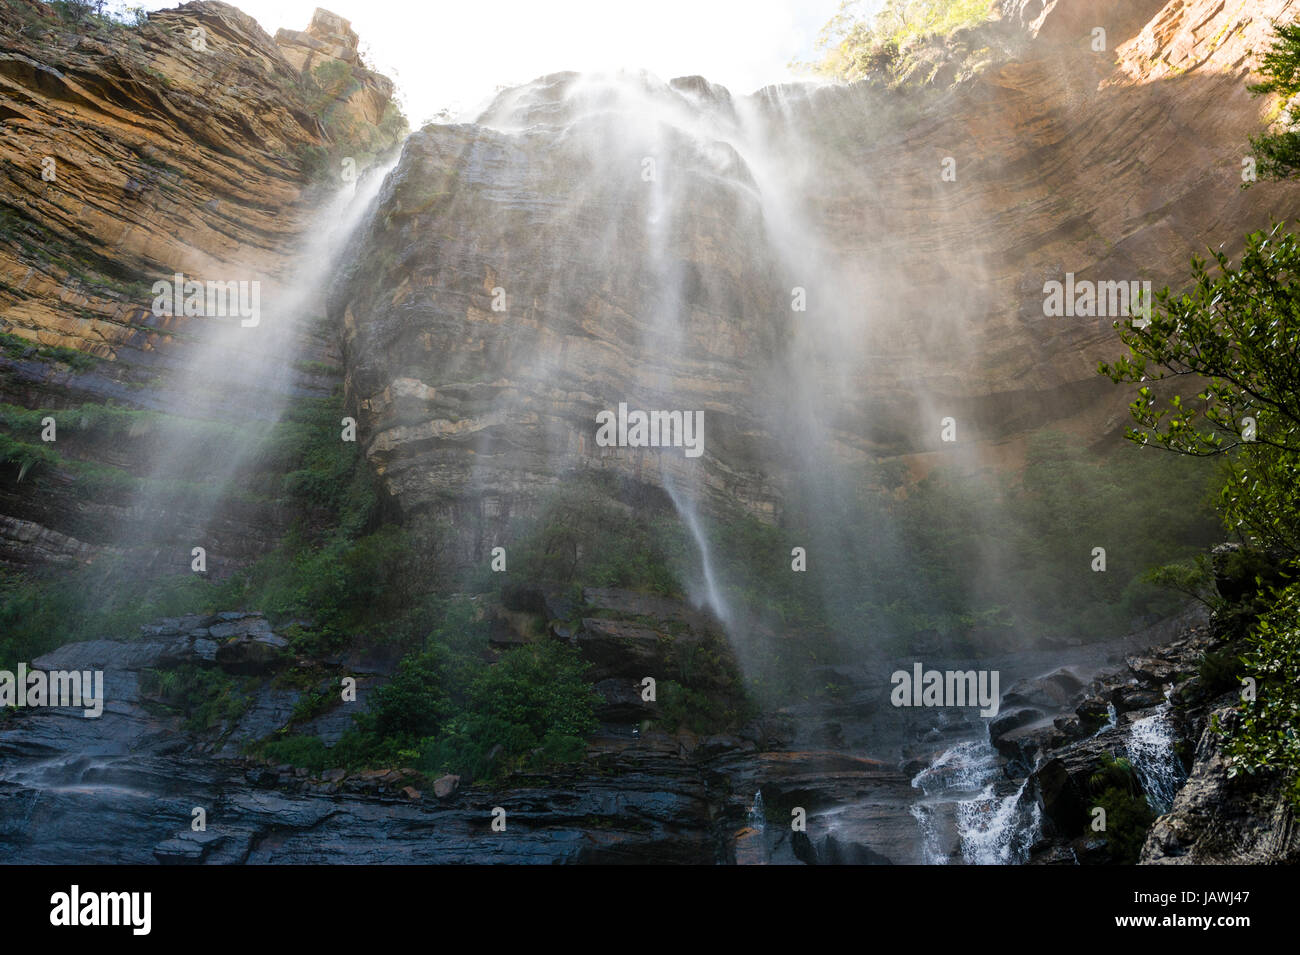 Ein Vorhang aus Nebel und Wasser Kaskaden aus einem Wasserfall auf einer Sandstein-Klippe. Stockfoto